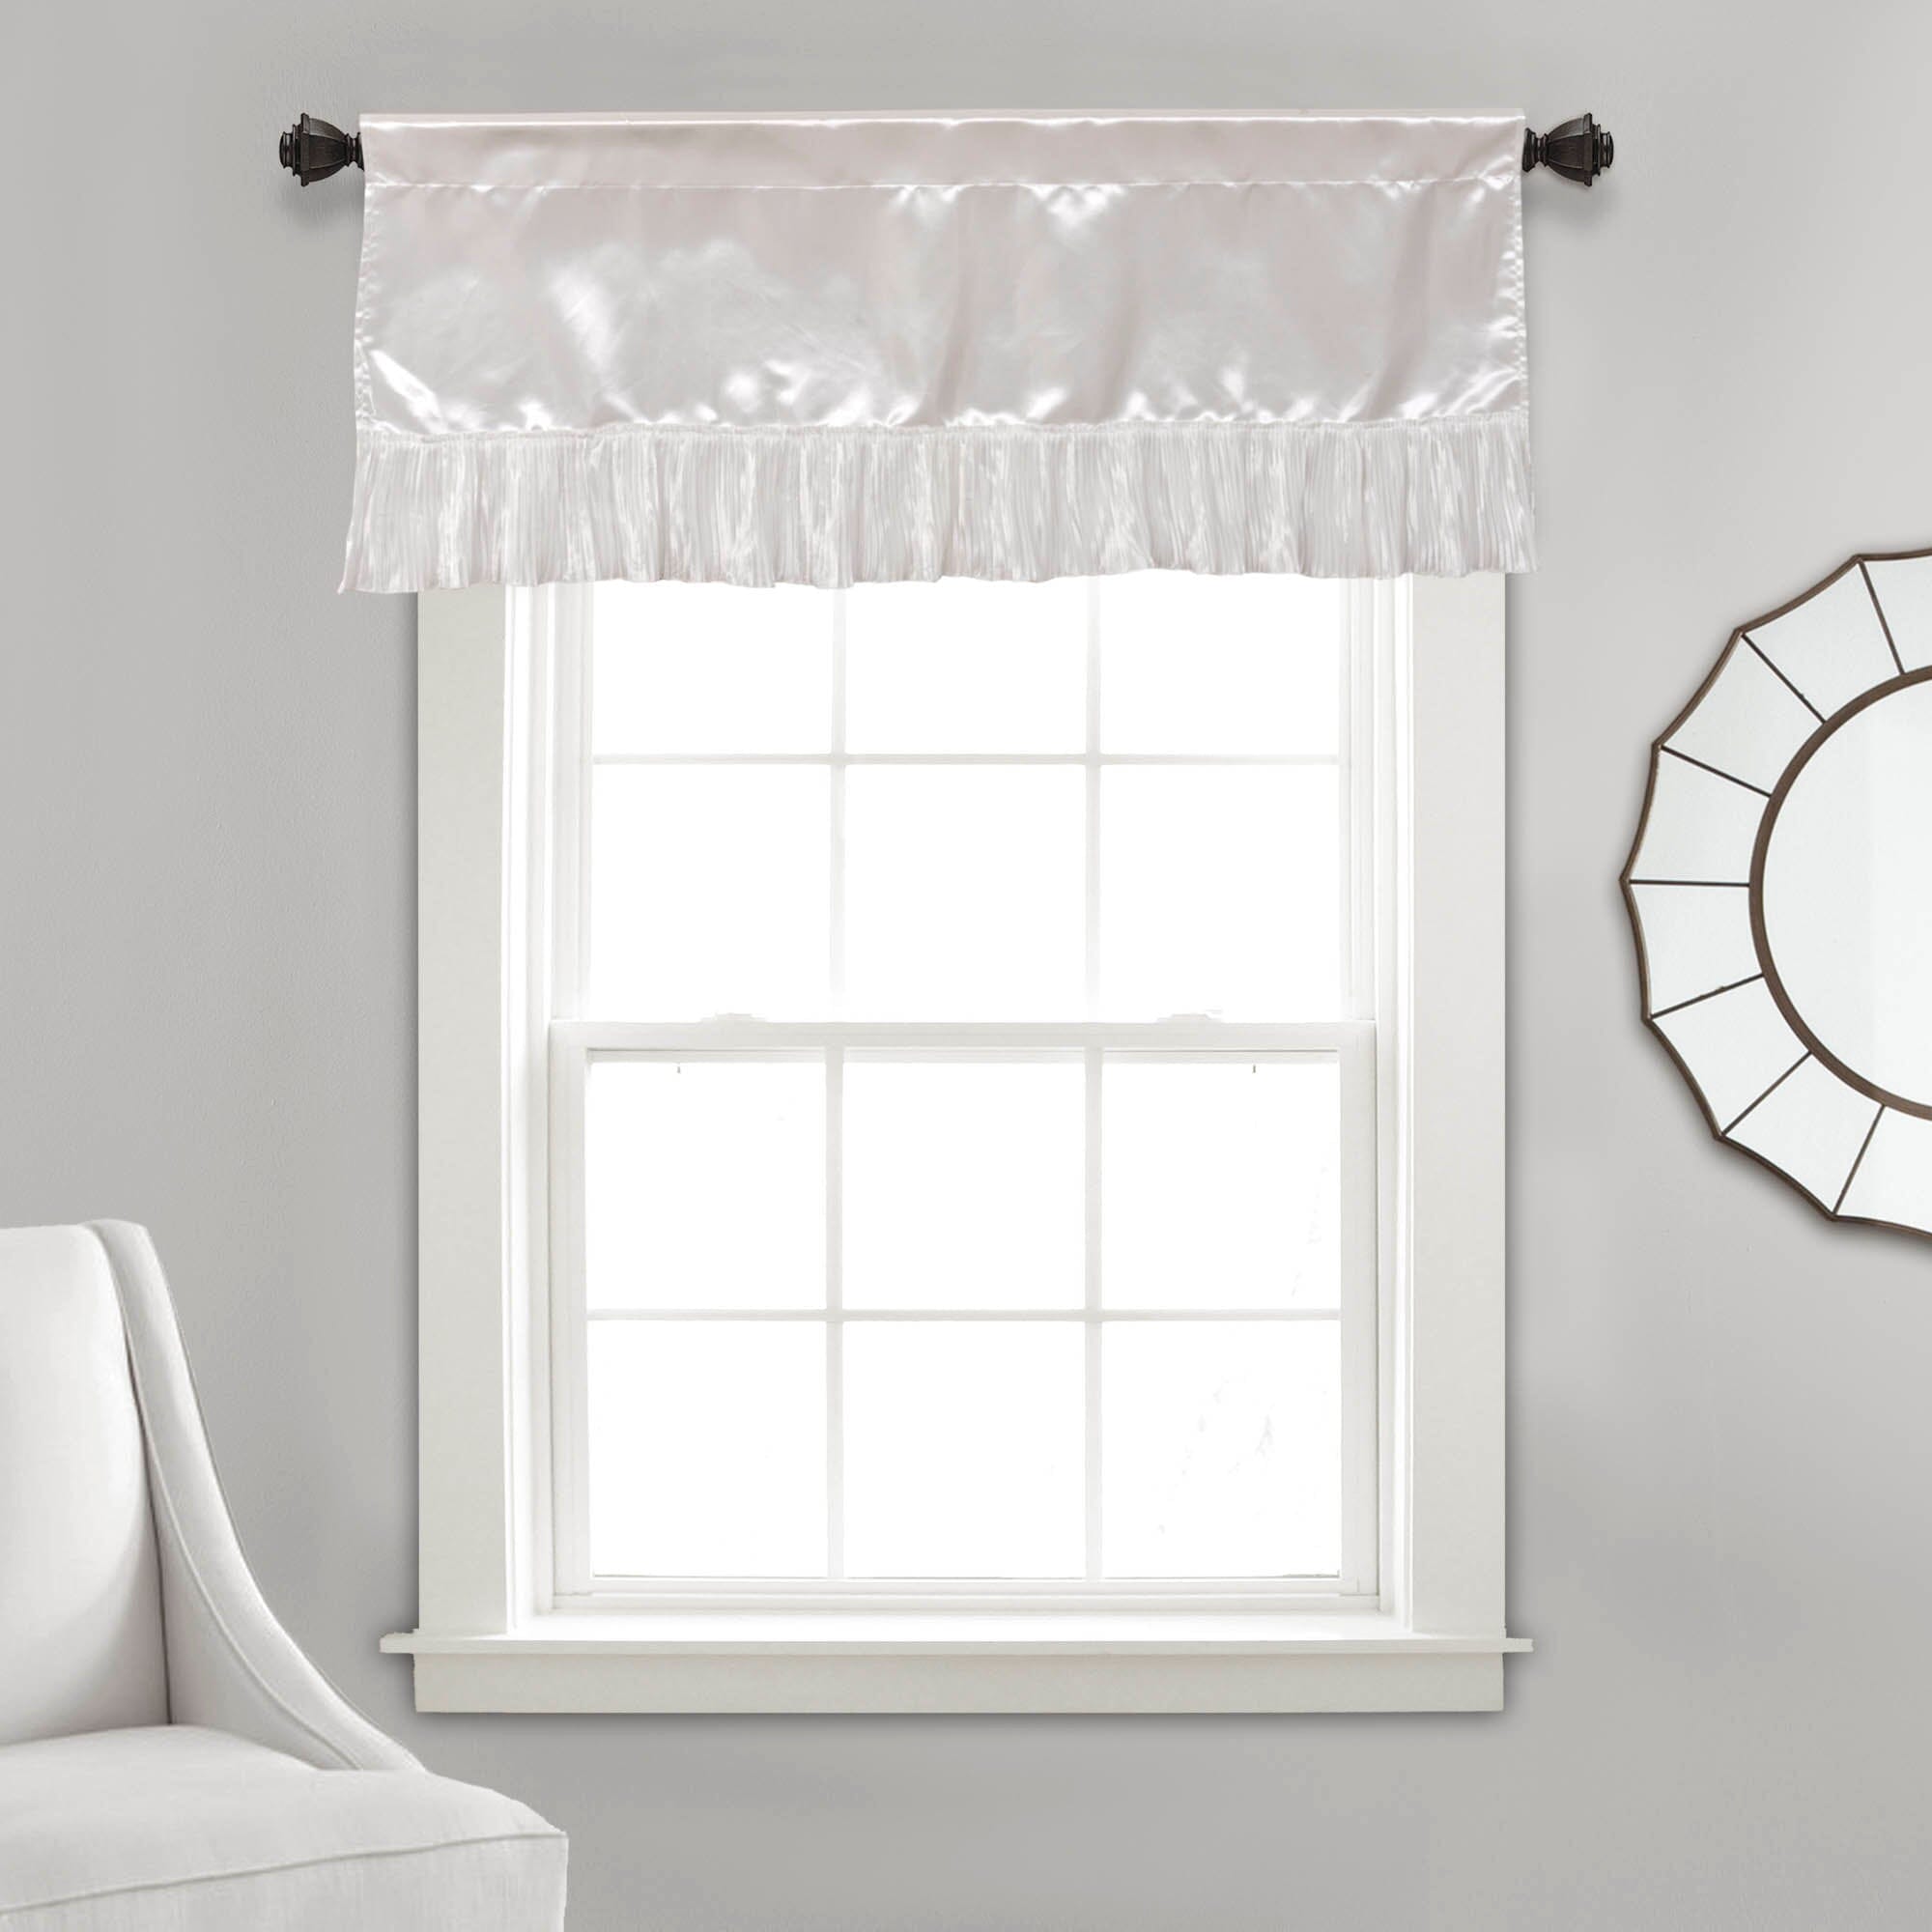 Tache Satin Ruffle Sweet Victorian Window Curtain Tailored Valance 18x52" White (MZ002) - Tache Home Fashion